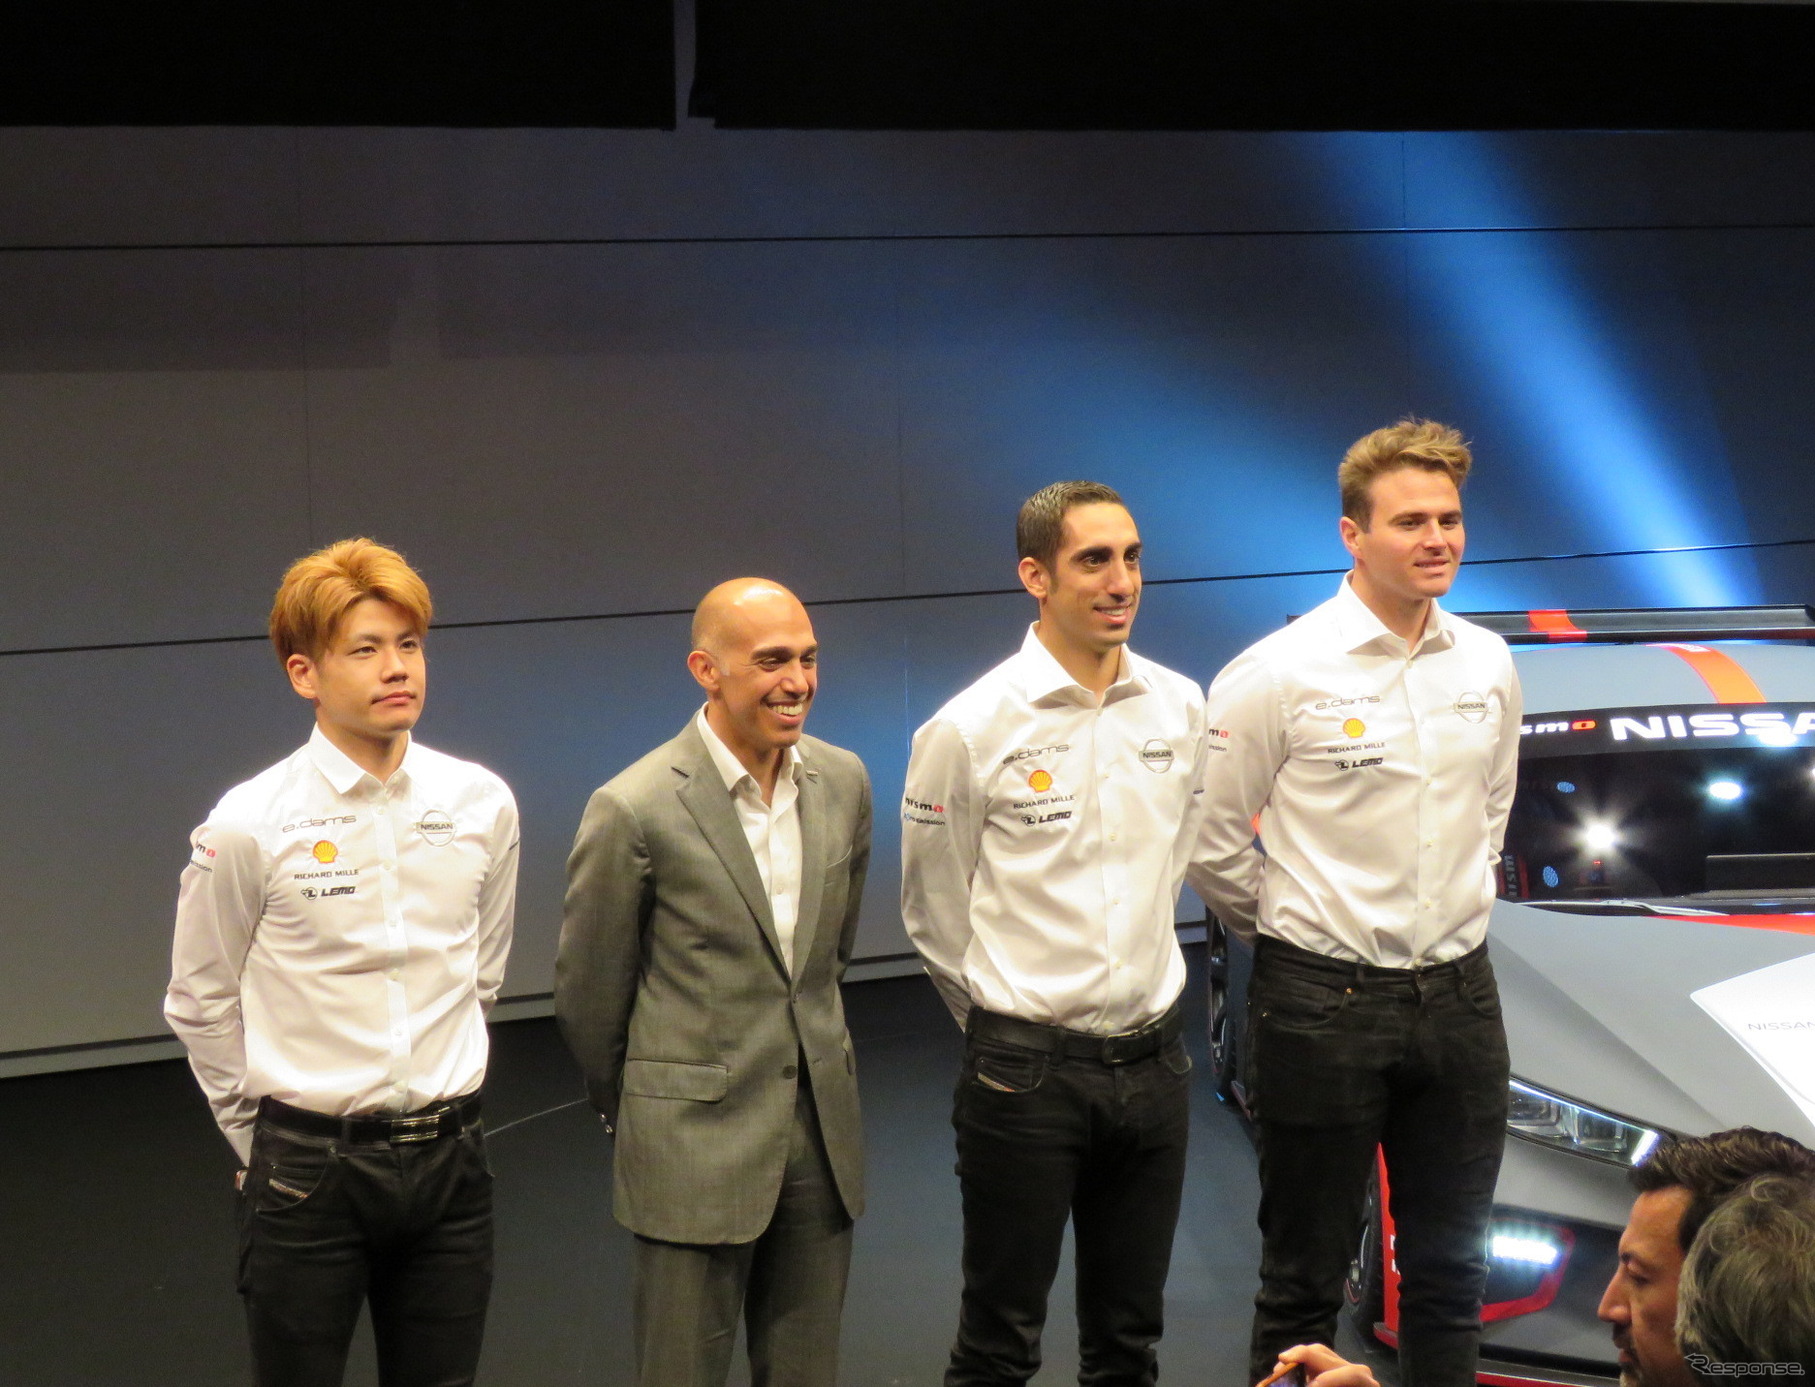 左から高星、日産グローバルモータースポーツダイレクターのマイケル・カルカモ氏、ブエミ、ローランド。